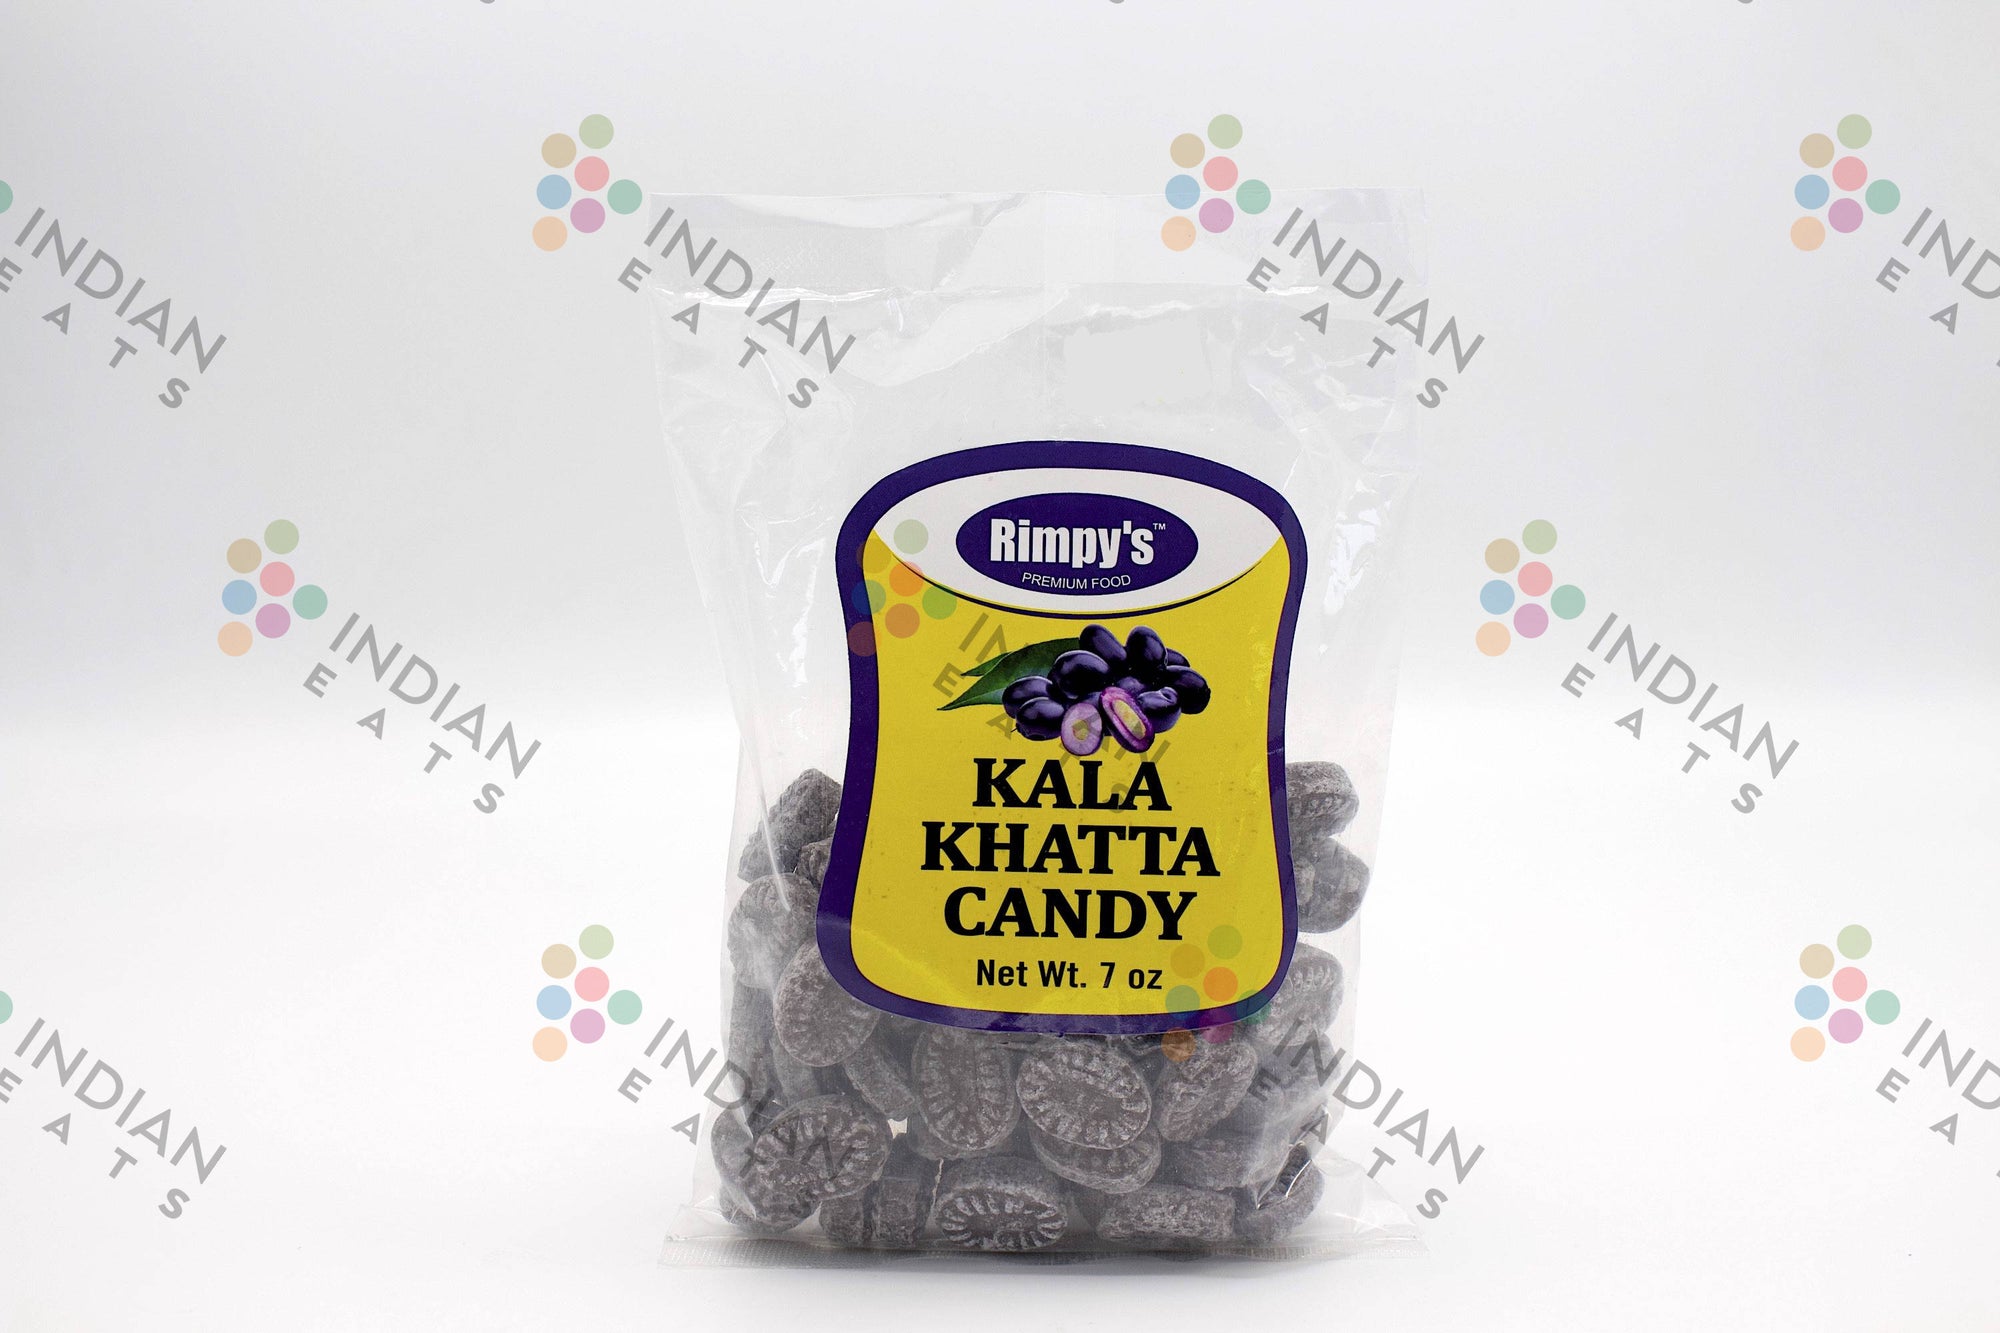 2000px x 1333px - Rimpy's Kala Khatta Candy - Indian Eats